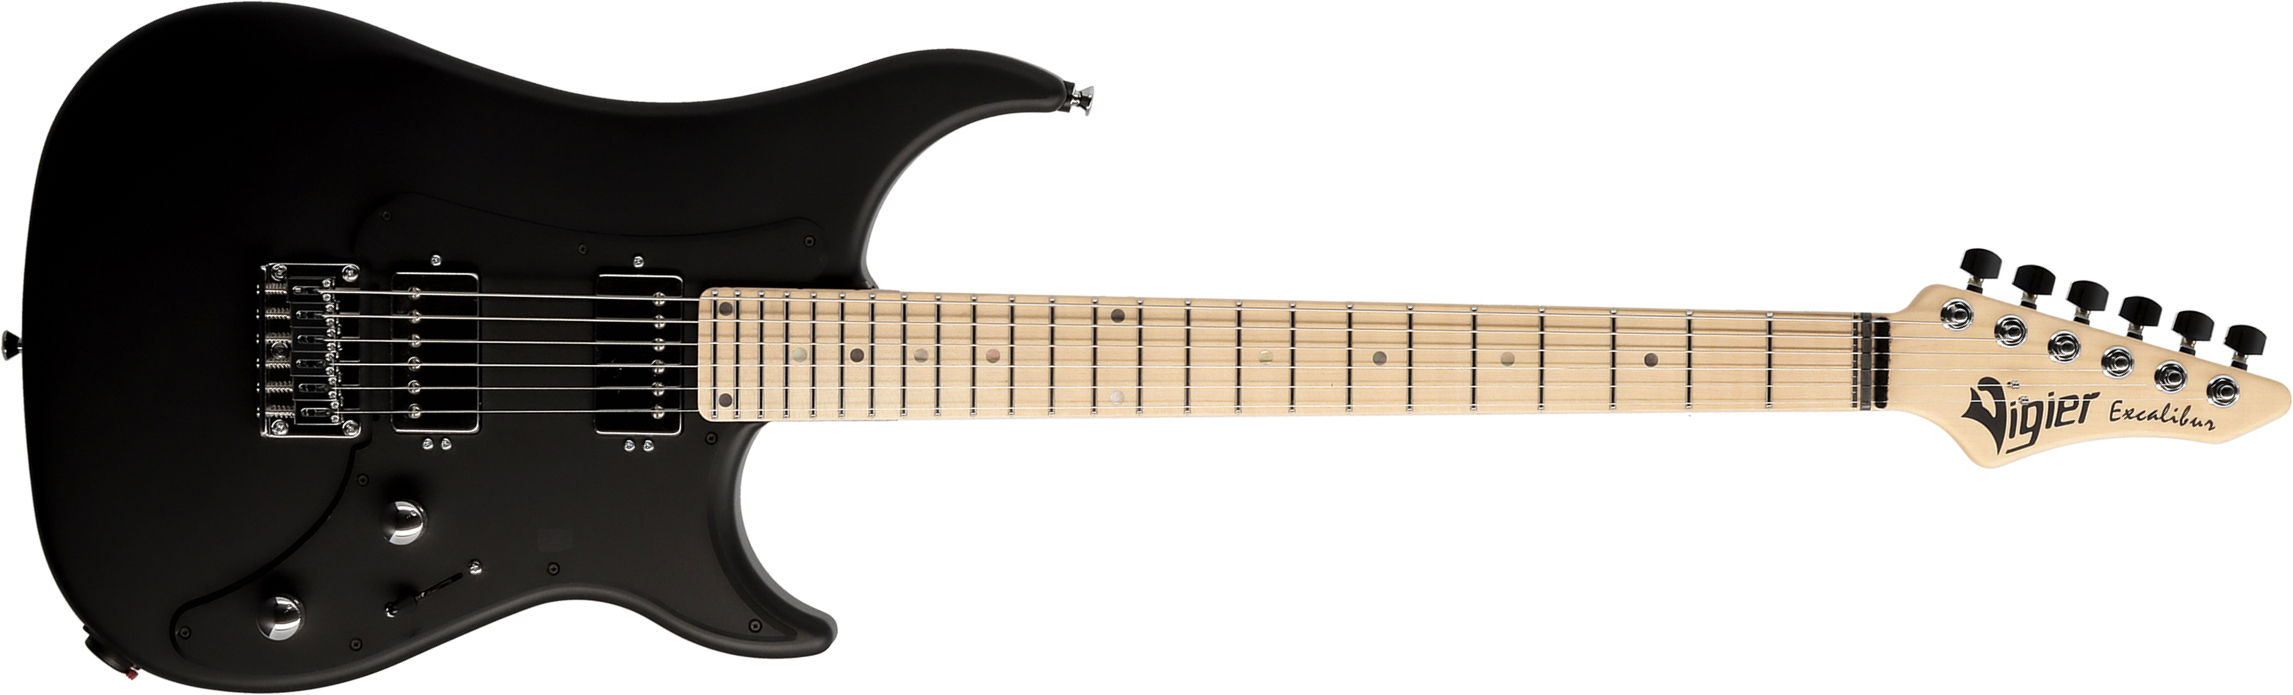 Vigier Excalibur Indus 2h Ht Mn - Black Matte - Str shape electric guitar - Main picture